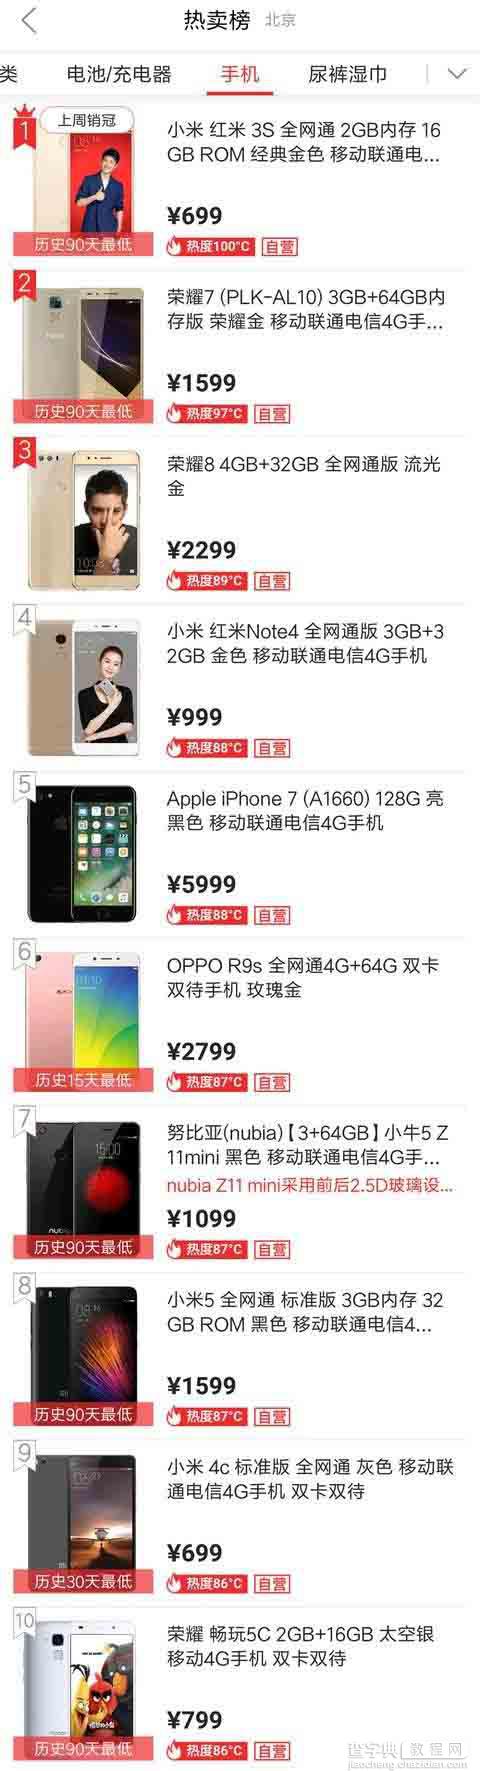 京东双11热销手机Top10速排行榜:小米/苹果领跑2